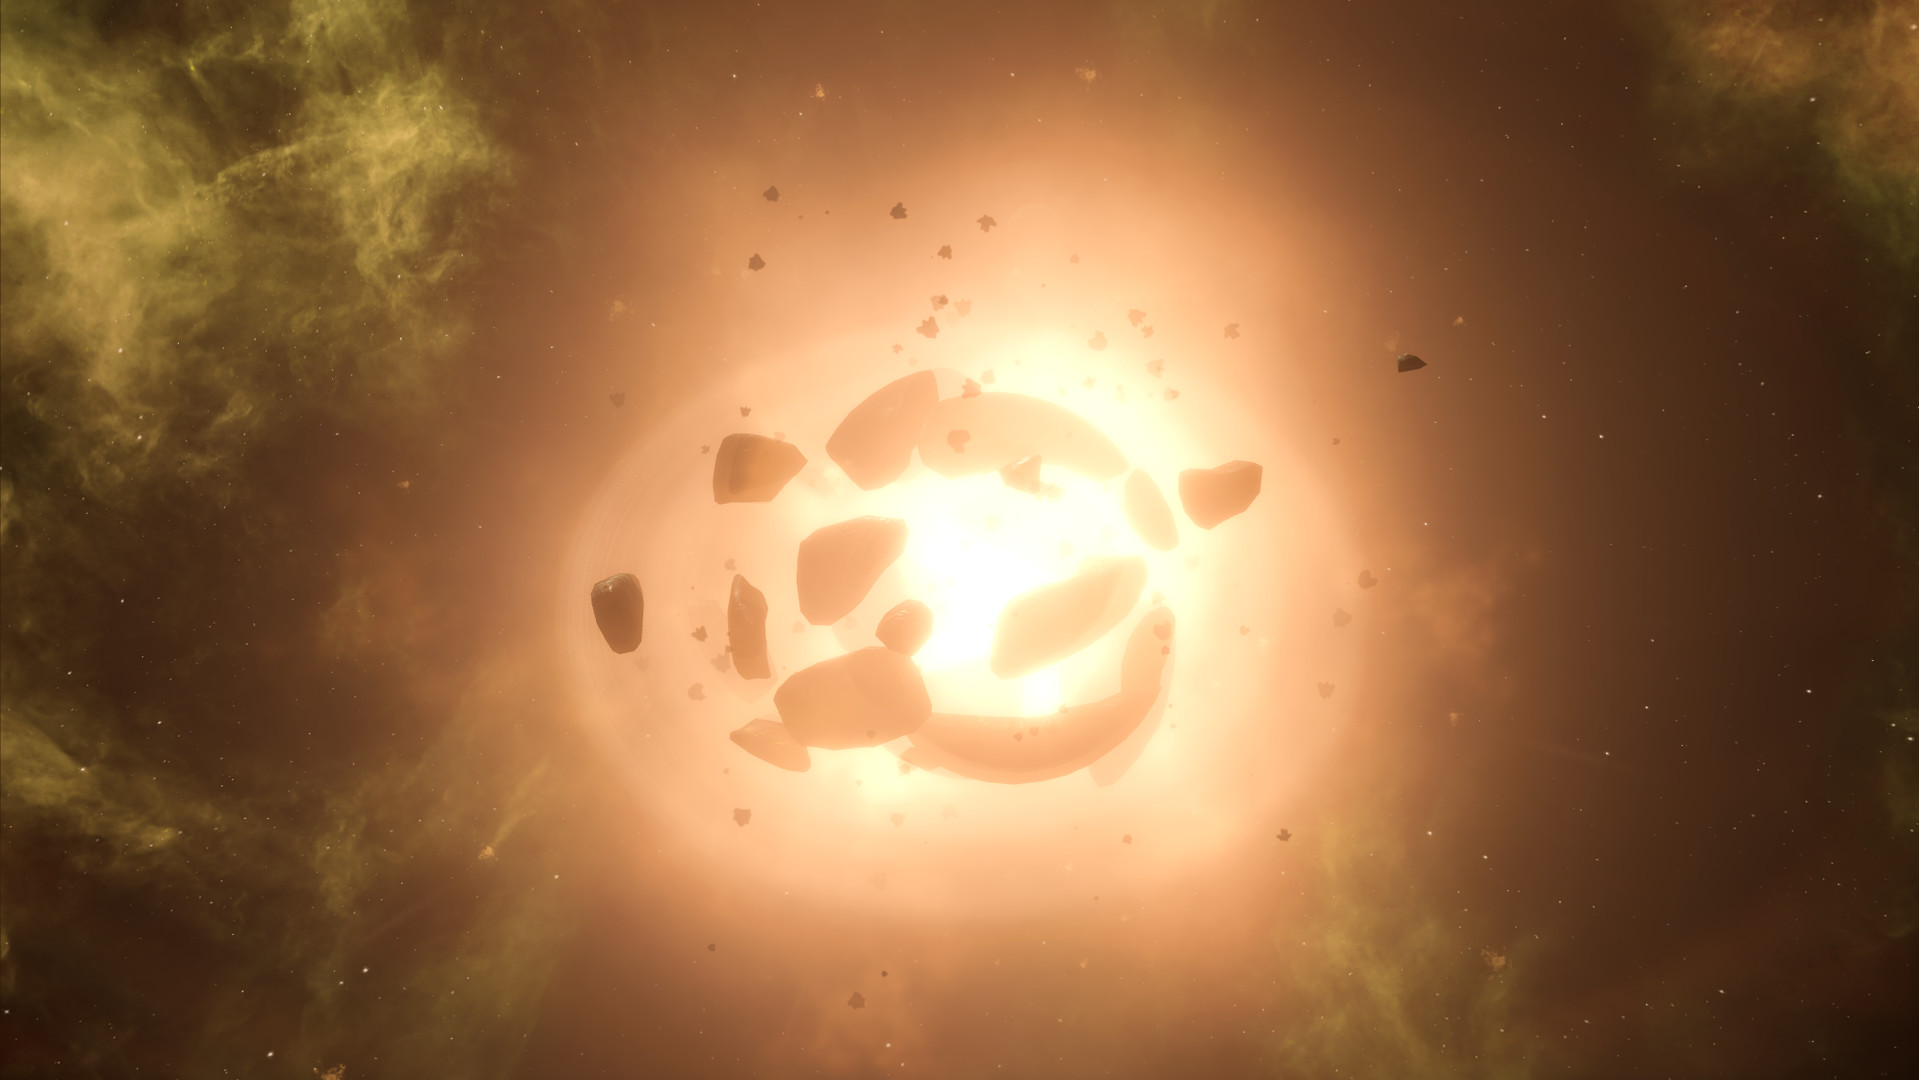 Stellaris: Darkest Timeline Bundle Steam CD Key